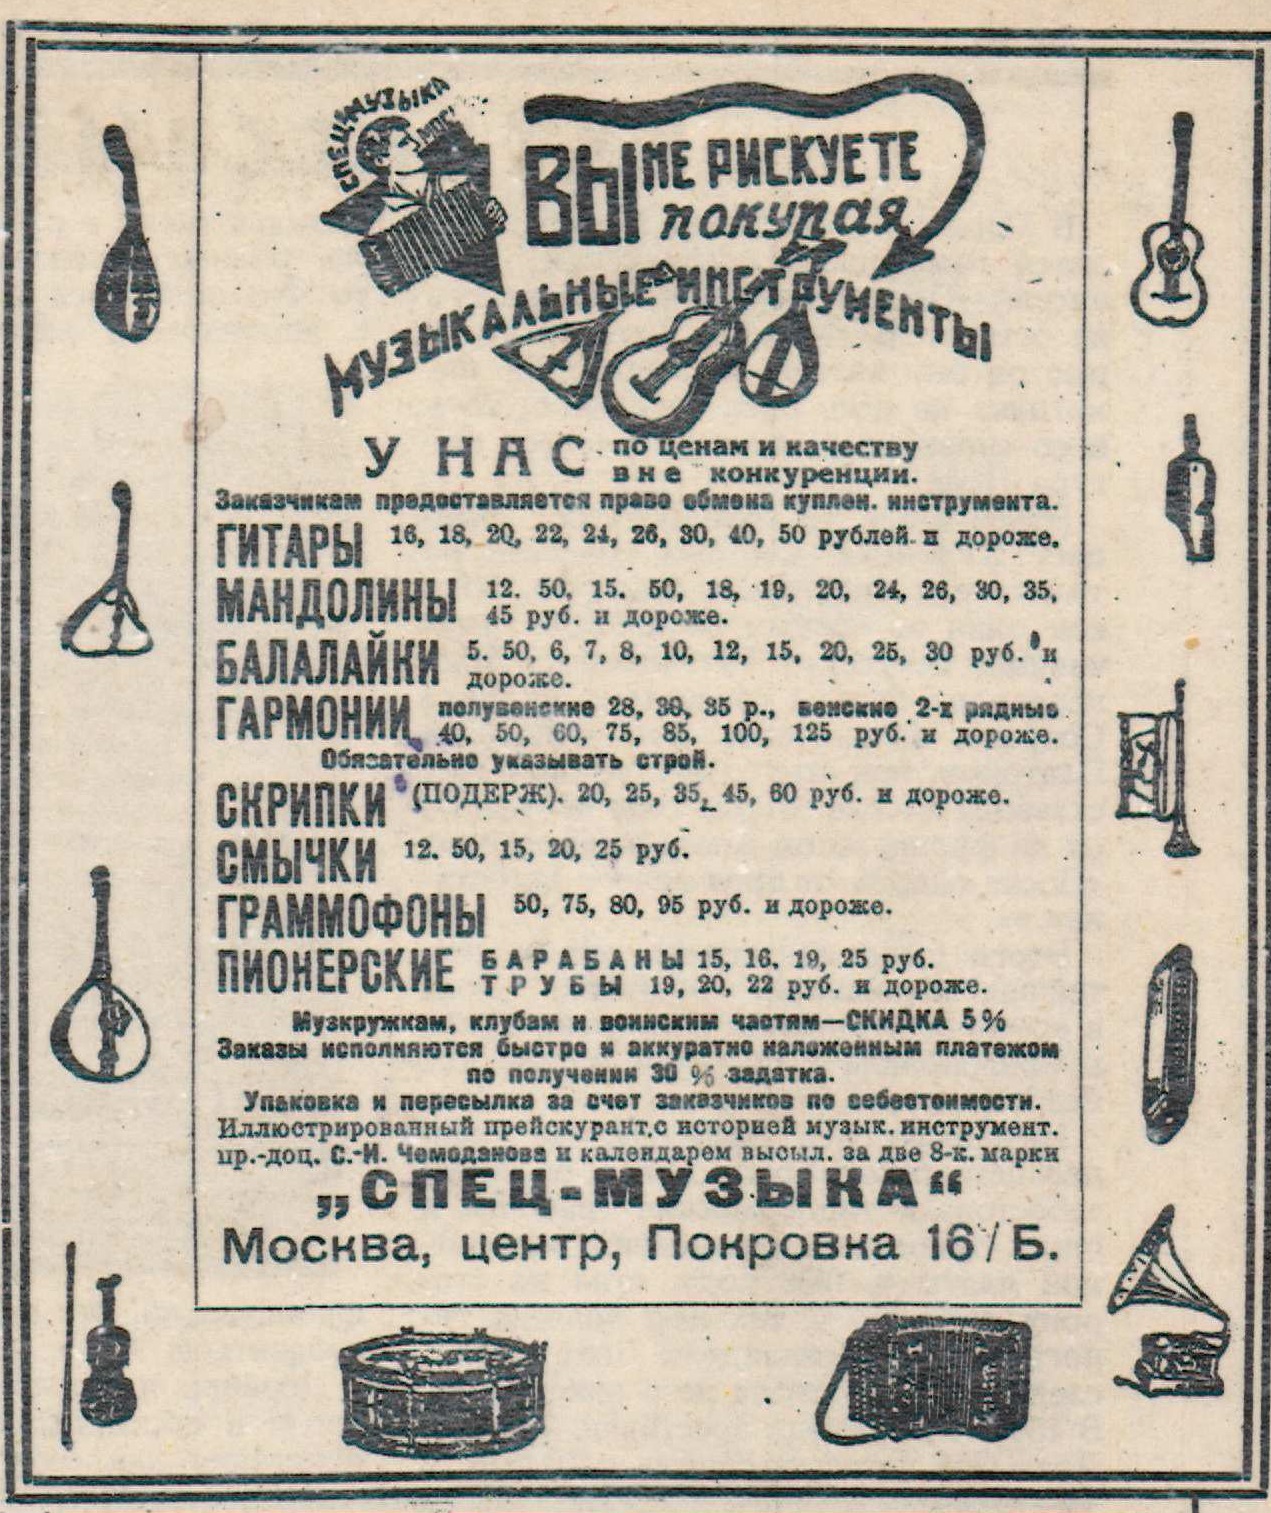 Реклама магазина "Спец-Музыка"